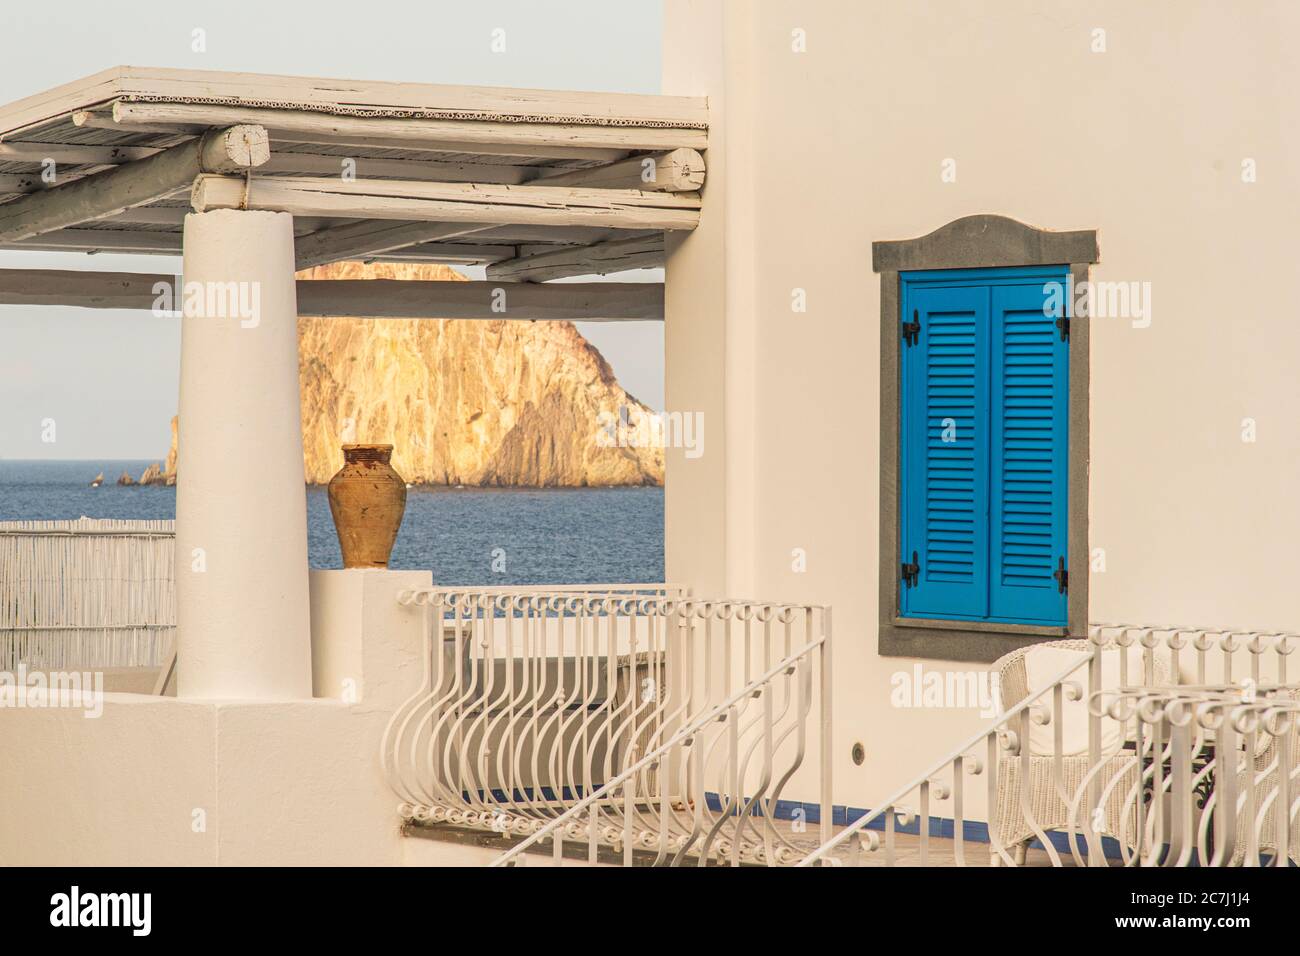 Sizilien - sonnige Eindrücke der Äolischen Inseln, auch als Äolische Inseln oder Isole Eolie bekannt: Lipari, Stromboli, Salina, Vulcano, Panarea, Filicudi und Alicudi. Blick auf Lisca Bianca über eine Dachterrasse auf Panarea. Stockfoto